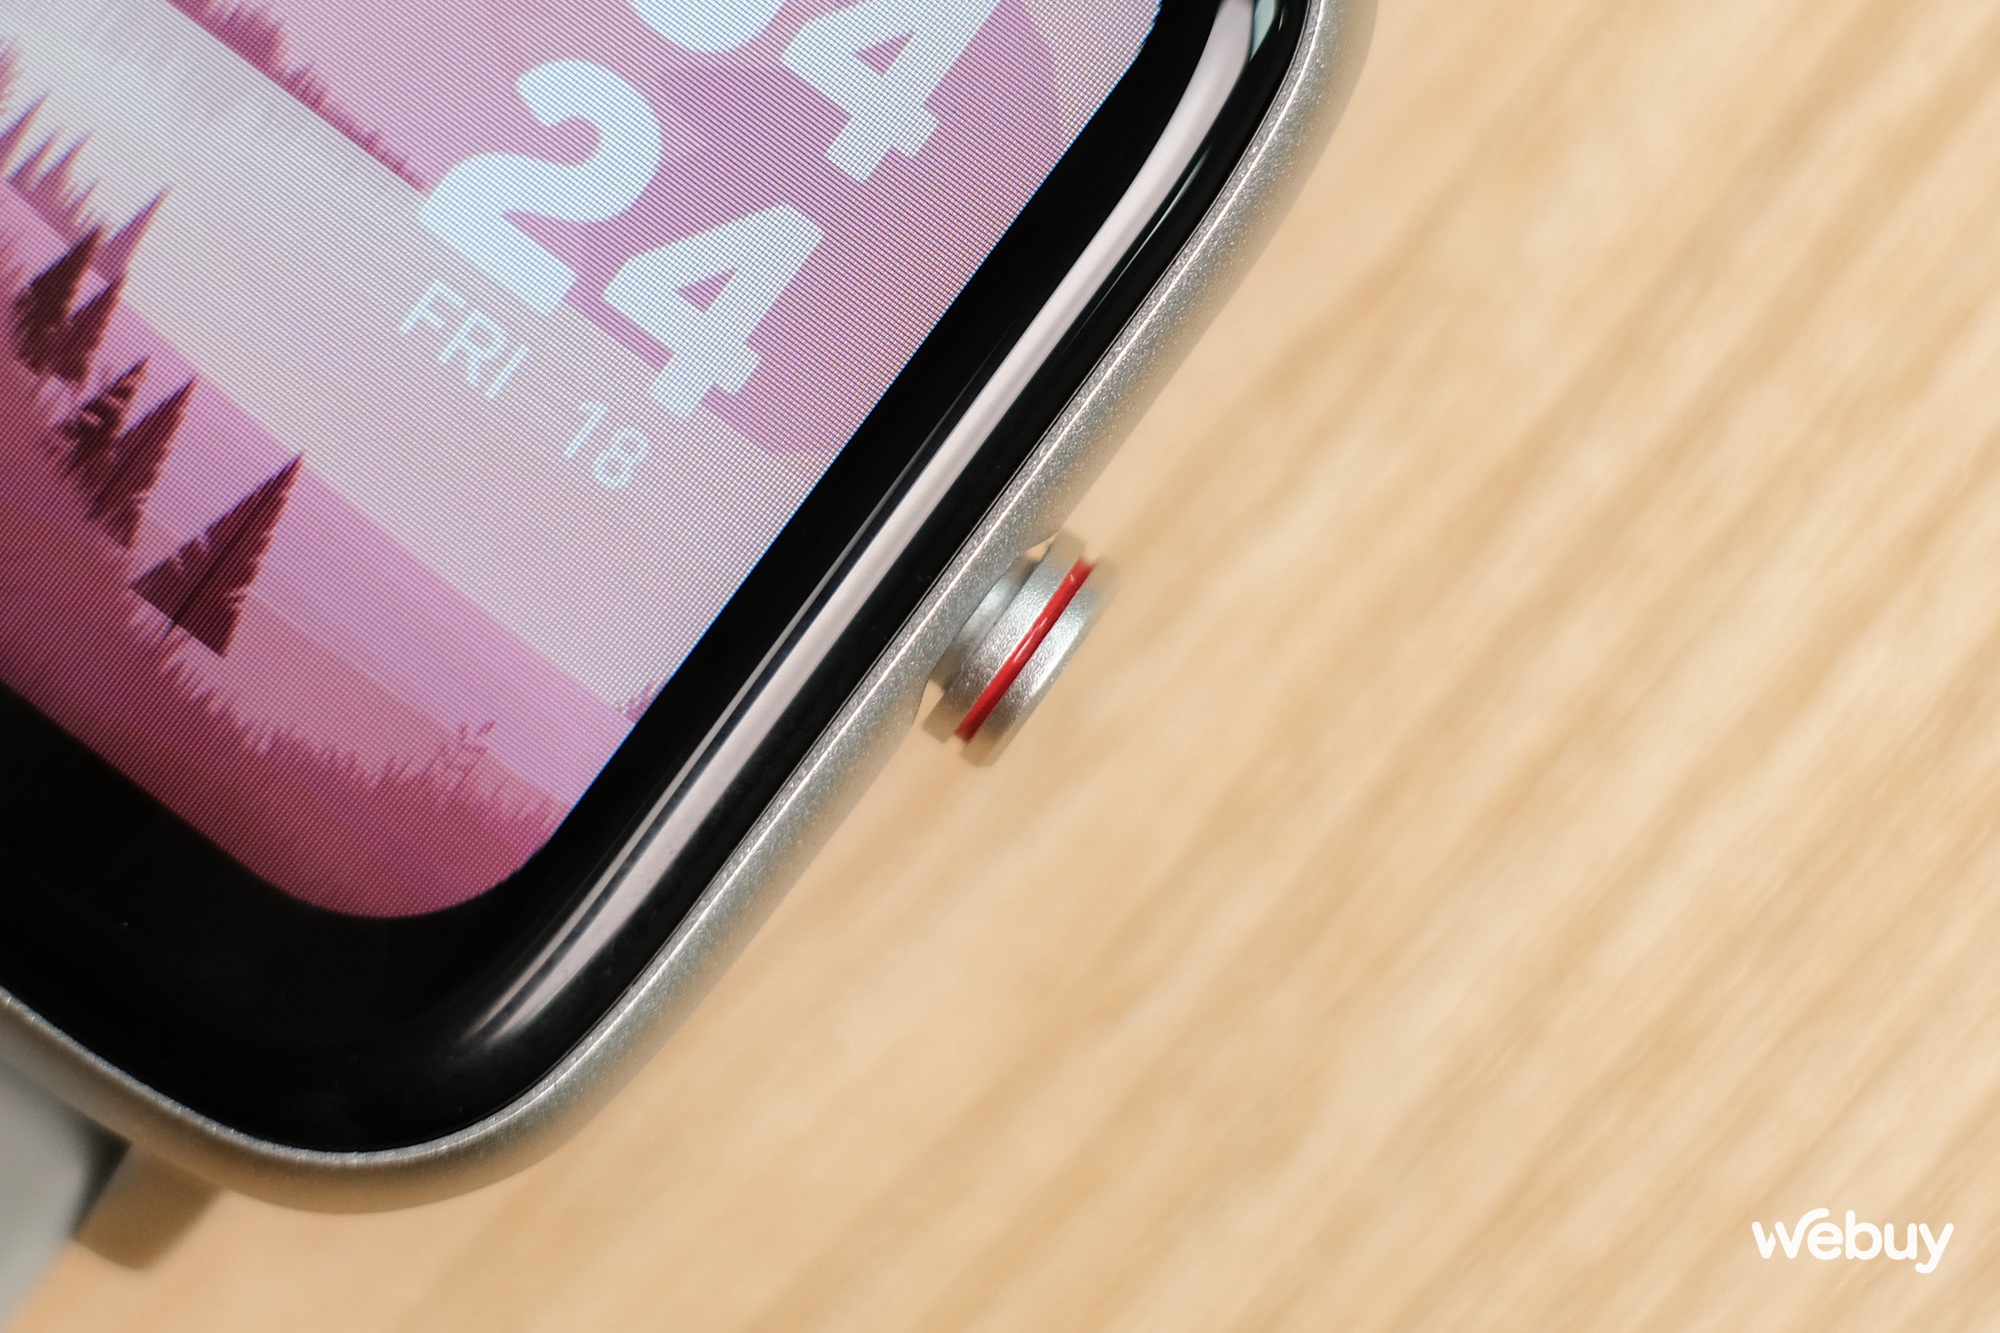 Smartwatch chính hãng giá 690,000 đồng có khung viền nhôm, loa và mic thoại, pin 7 ngày - Ảnh 9.